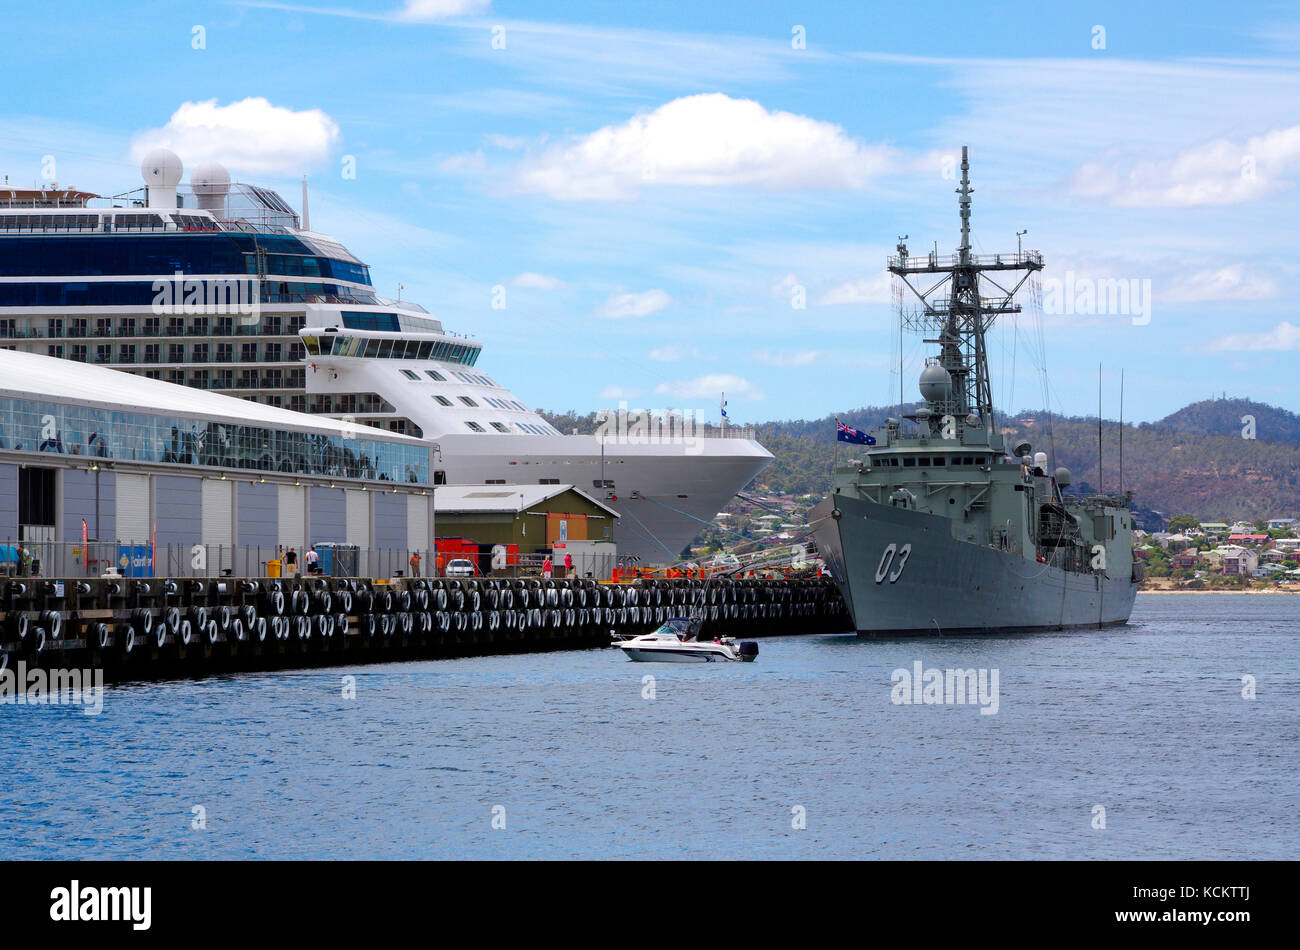 HMAS Sydney et le navire de croisière 'Celebrity Solstice'. Hobart, Tasmanie, Australie Banque D'Images